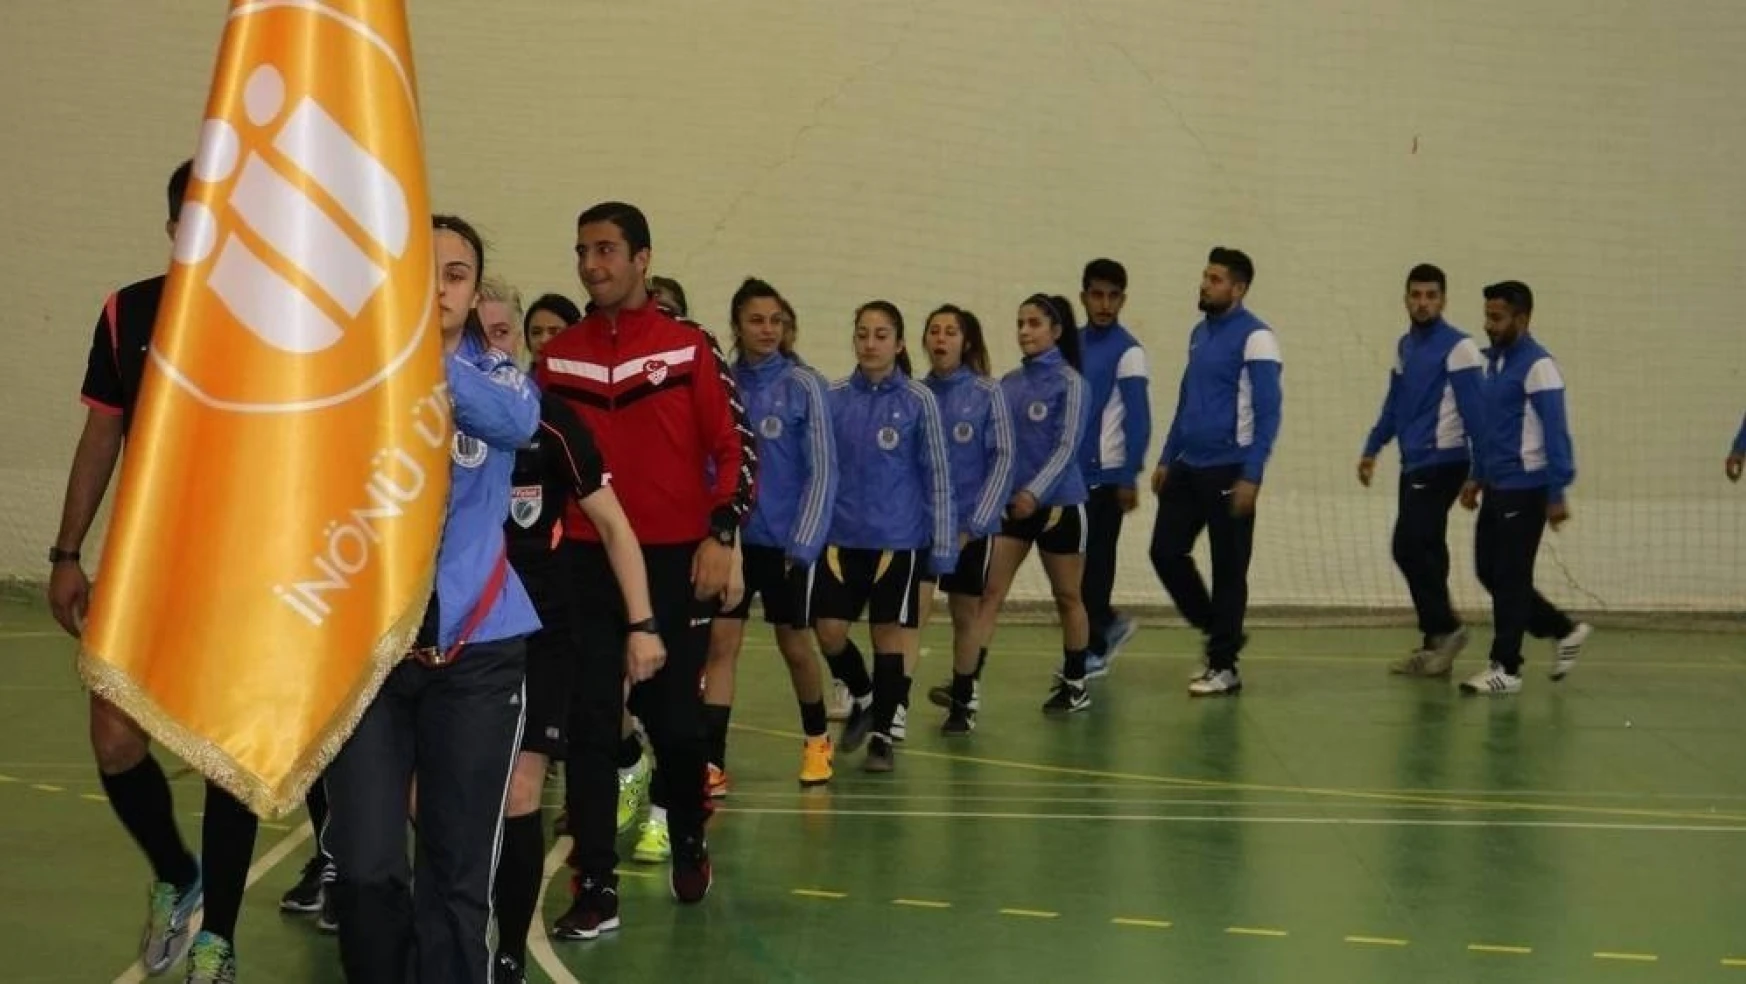 Salon Futbolu 1.Lig Grup Müsabakaları başladı
